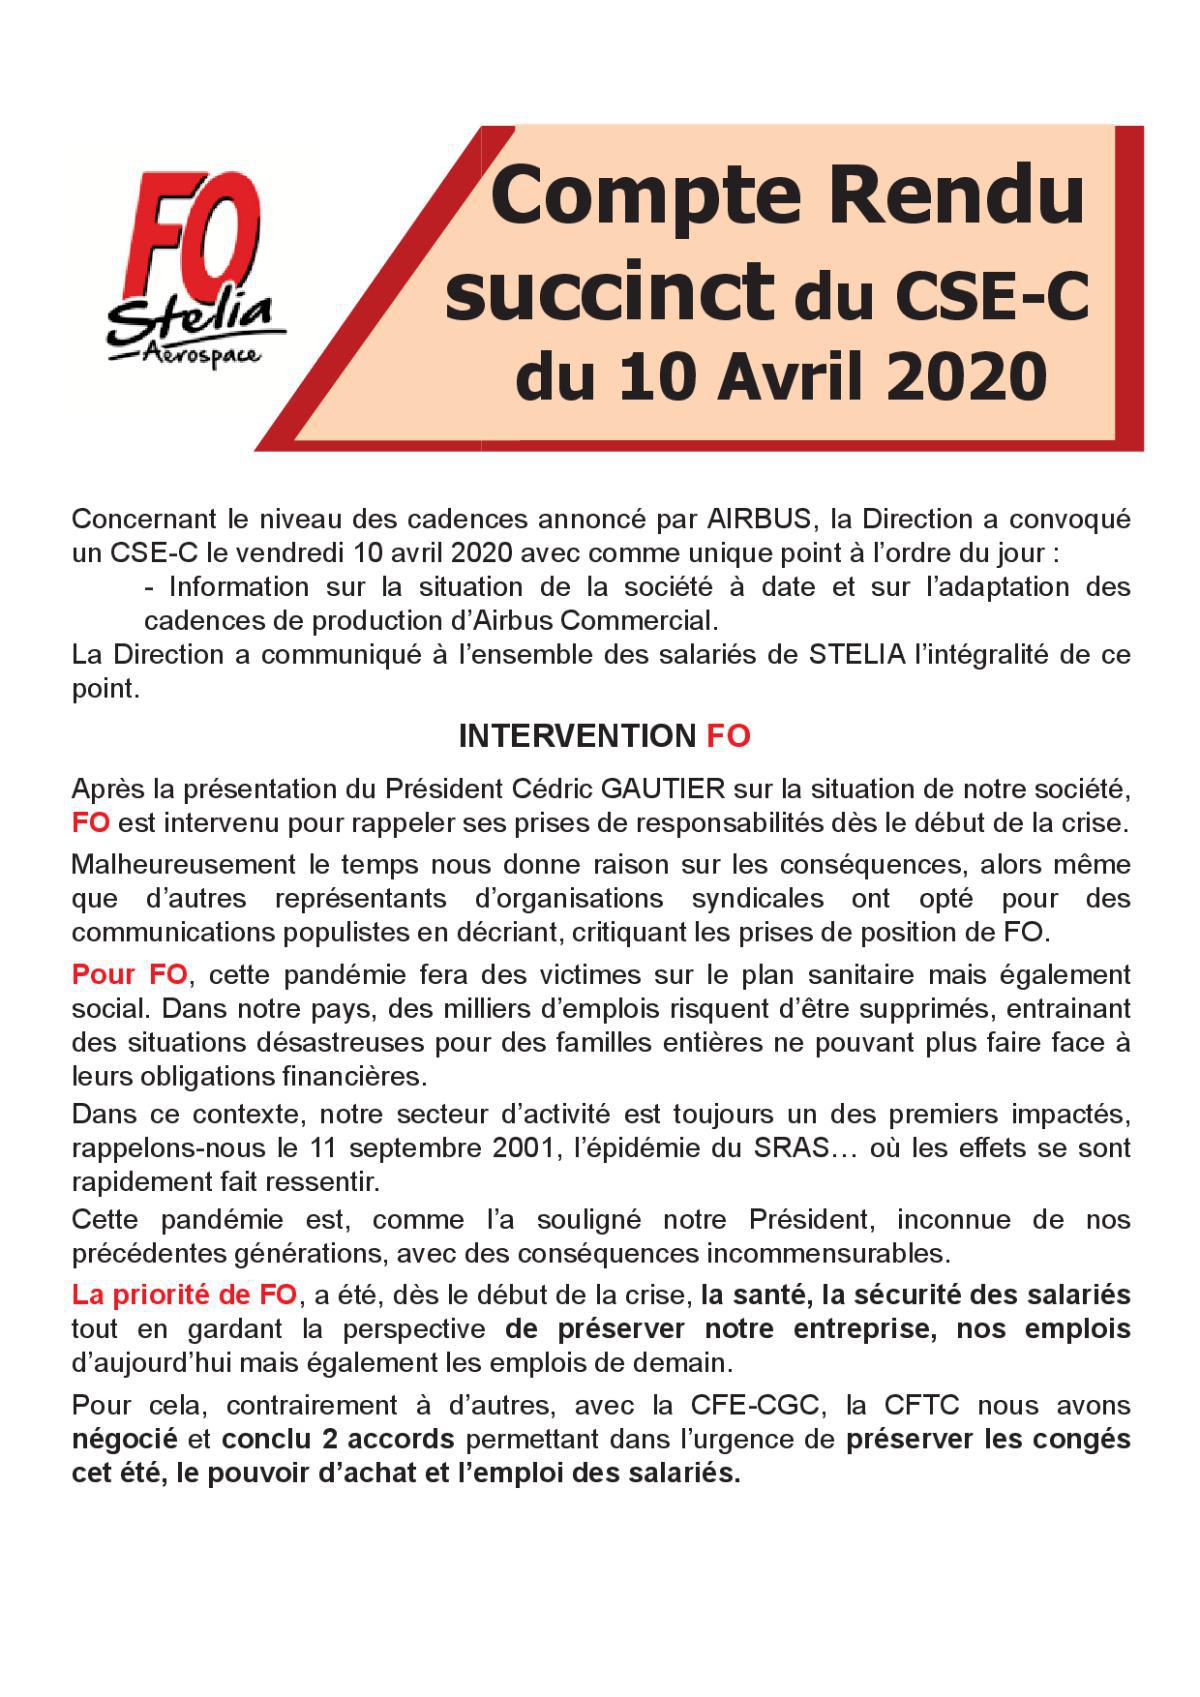 Flash Info : CR succinct du CSE-C du 10 avril 2020 